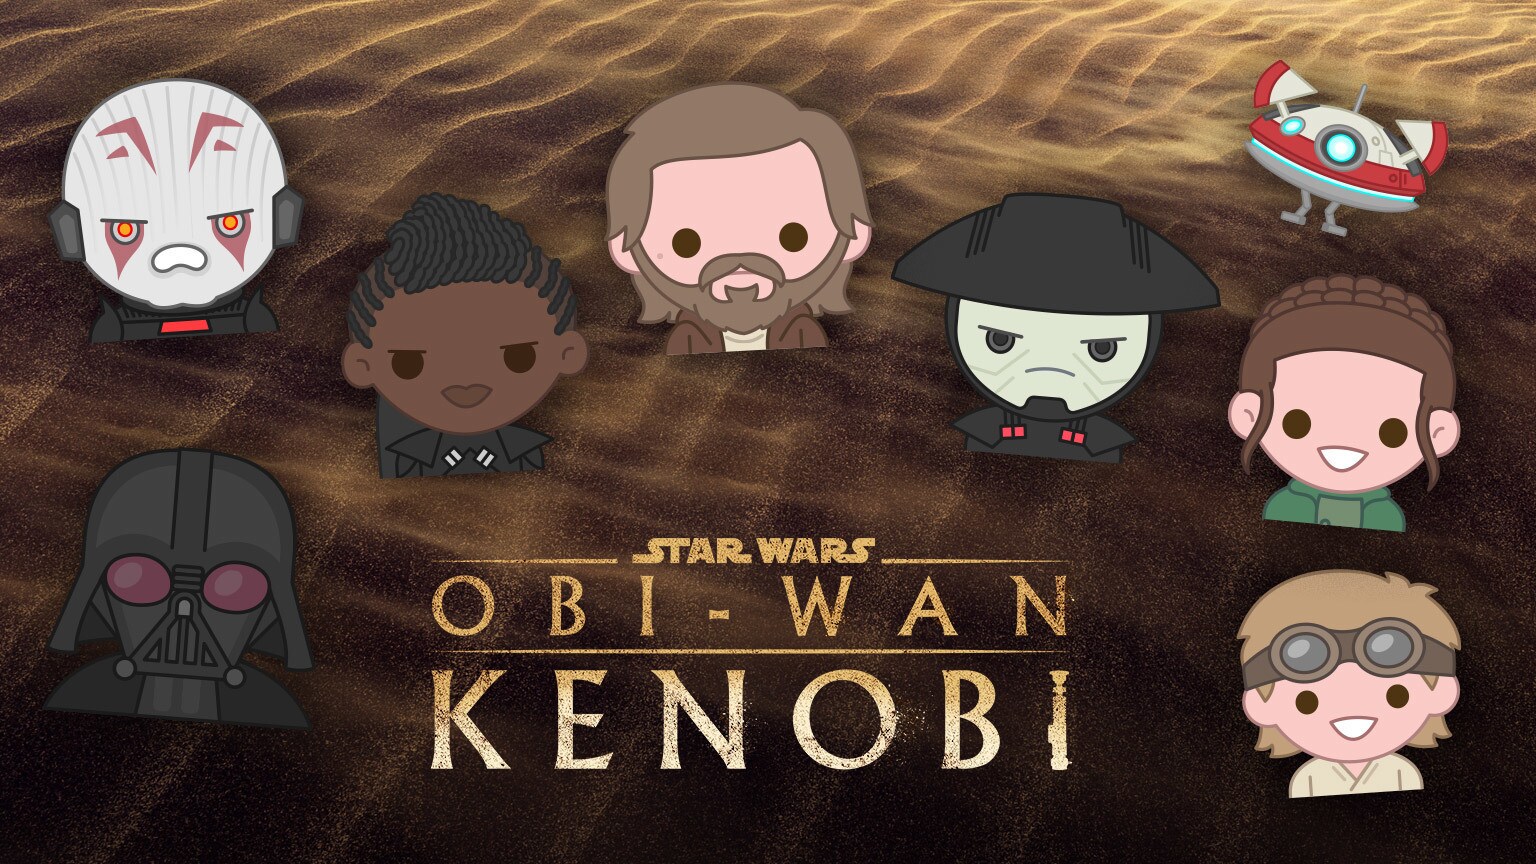 Obi-Wan Kenobi emojis